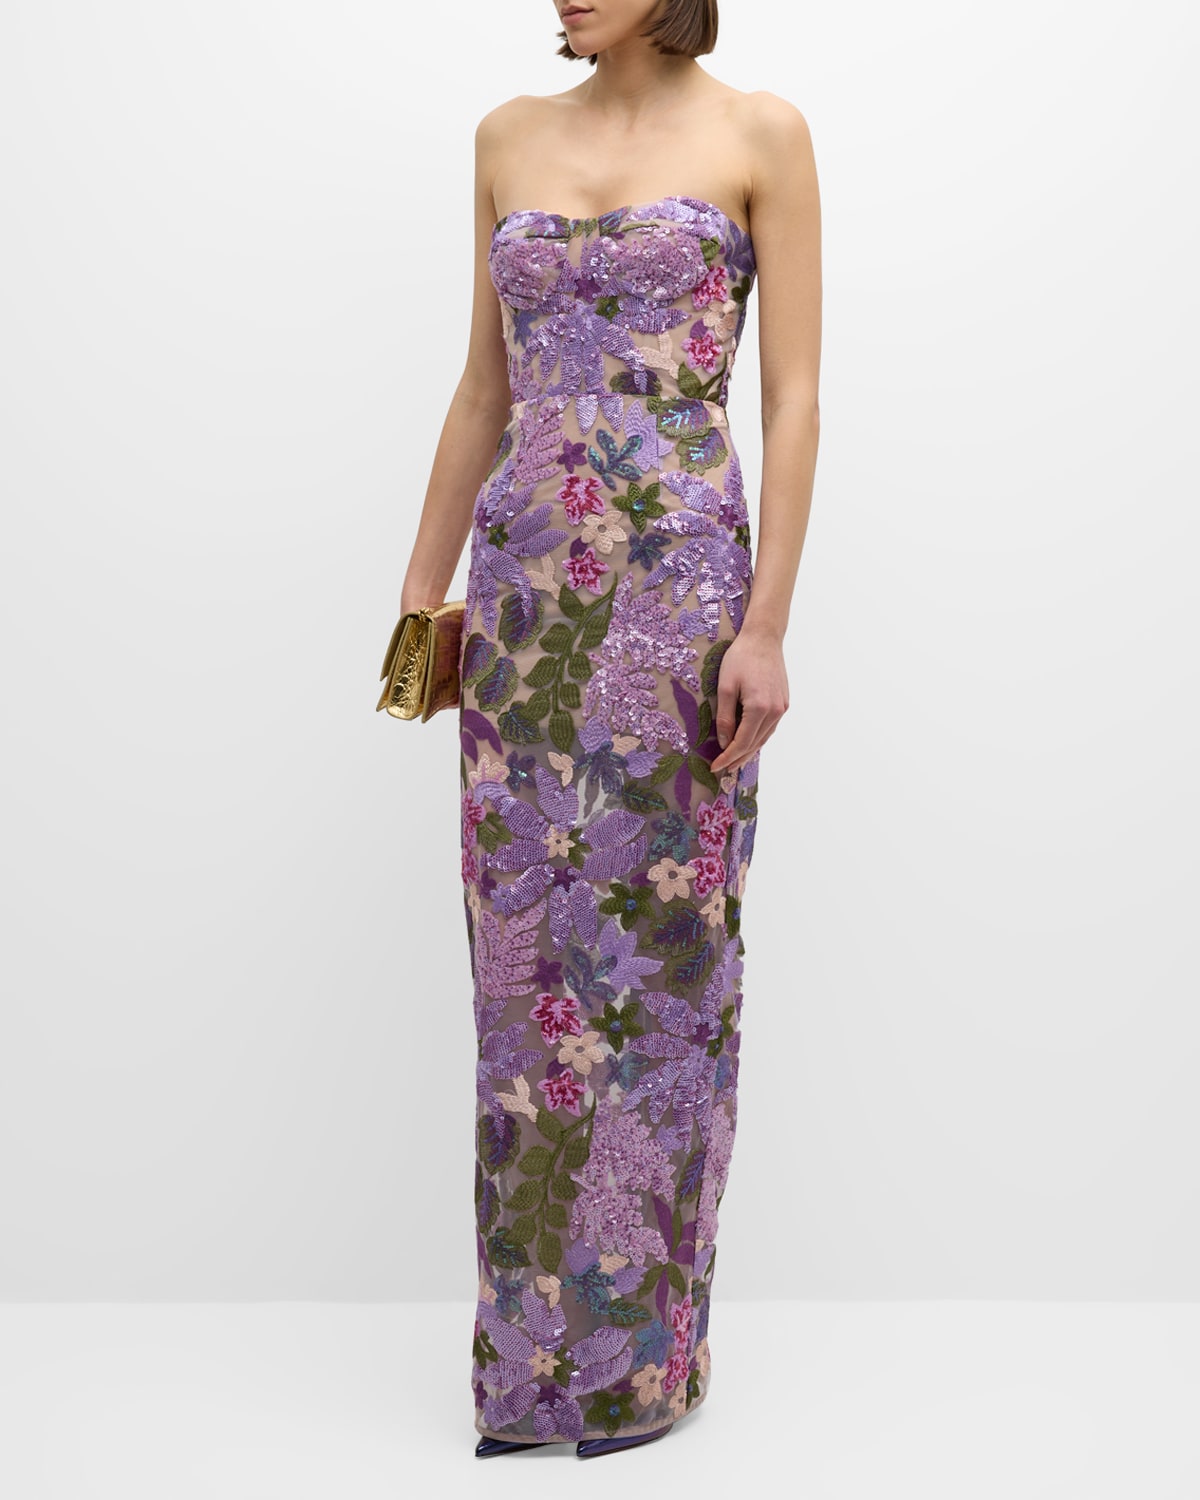 Column Designer Dresses  Women's High End Gowns Online – NewYorkDress